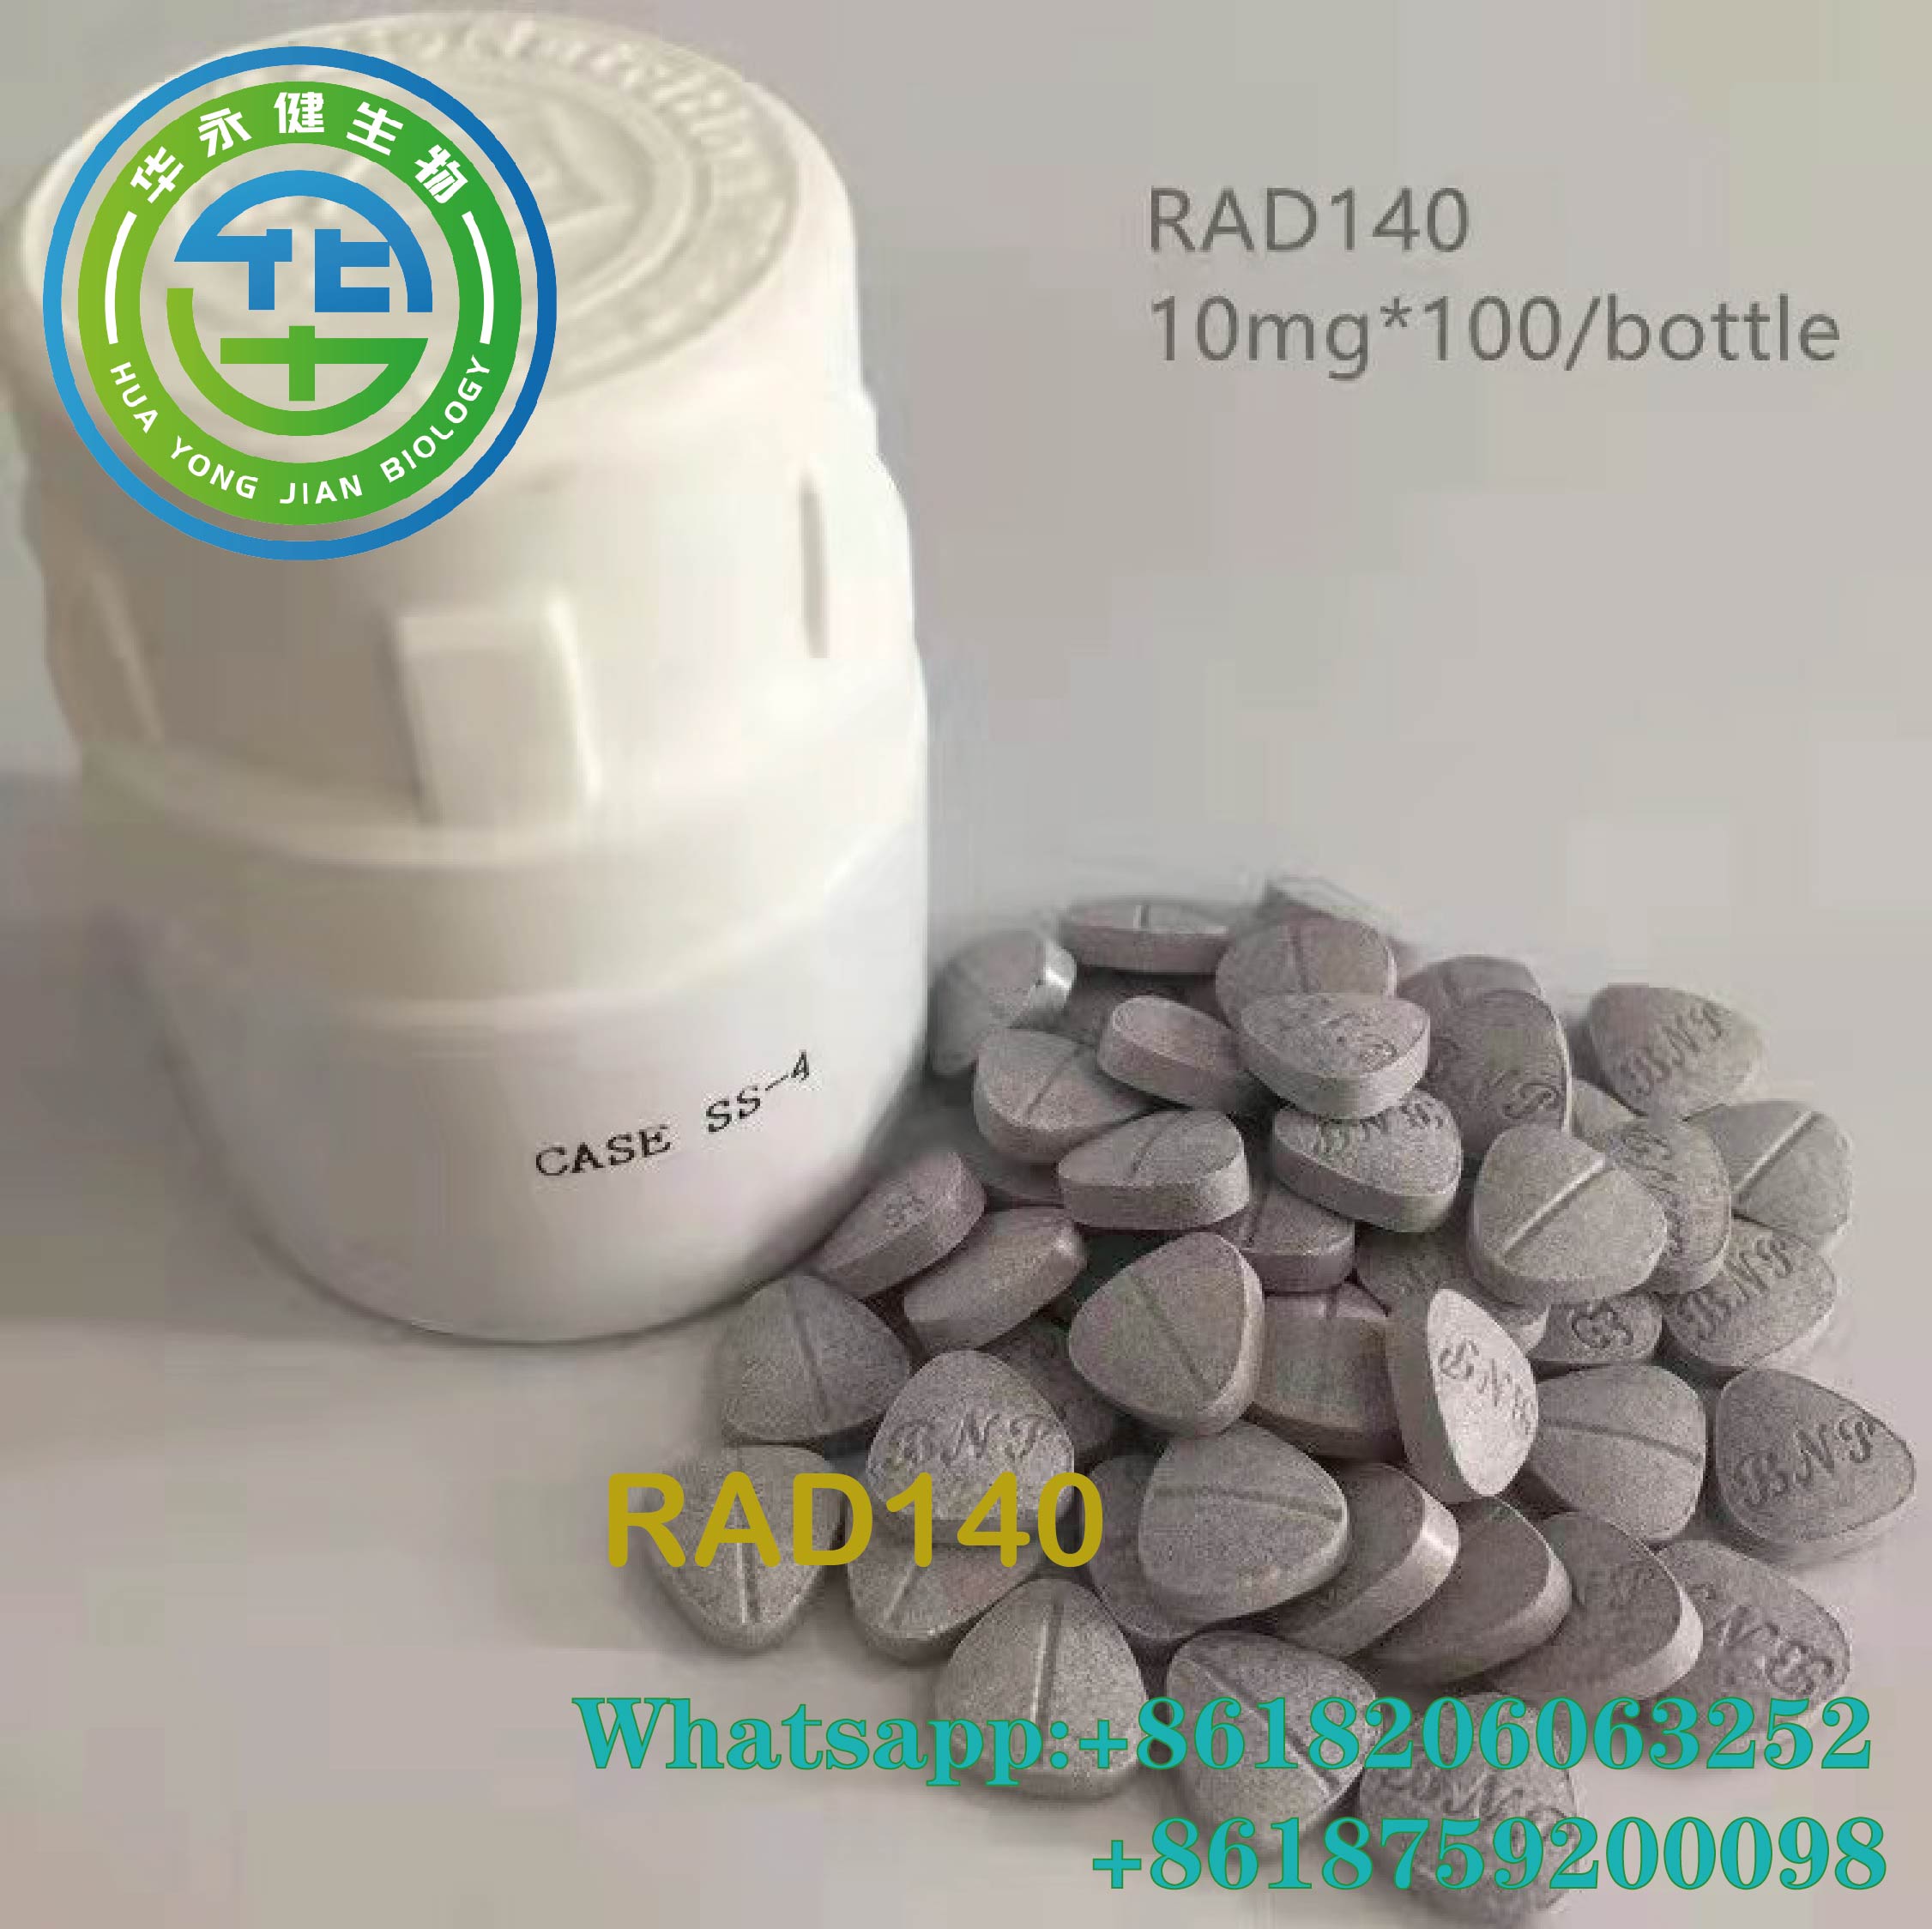 Testolon anabolic oral 10mg*100/sticlă Comprimate Steroizi Sarms Pulbere brută RAD140 pastile